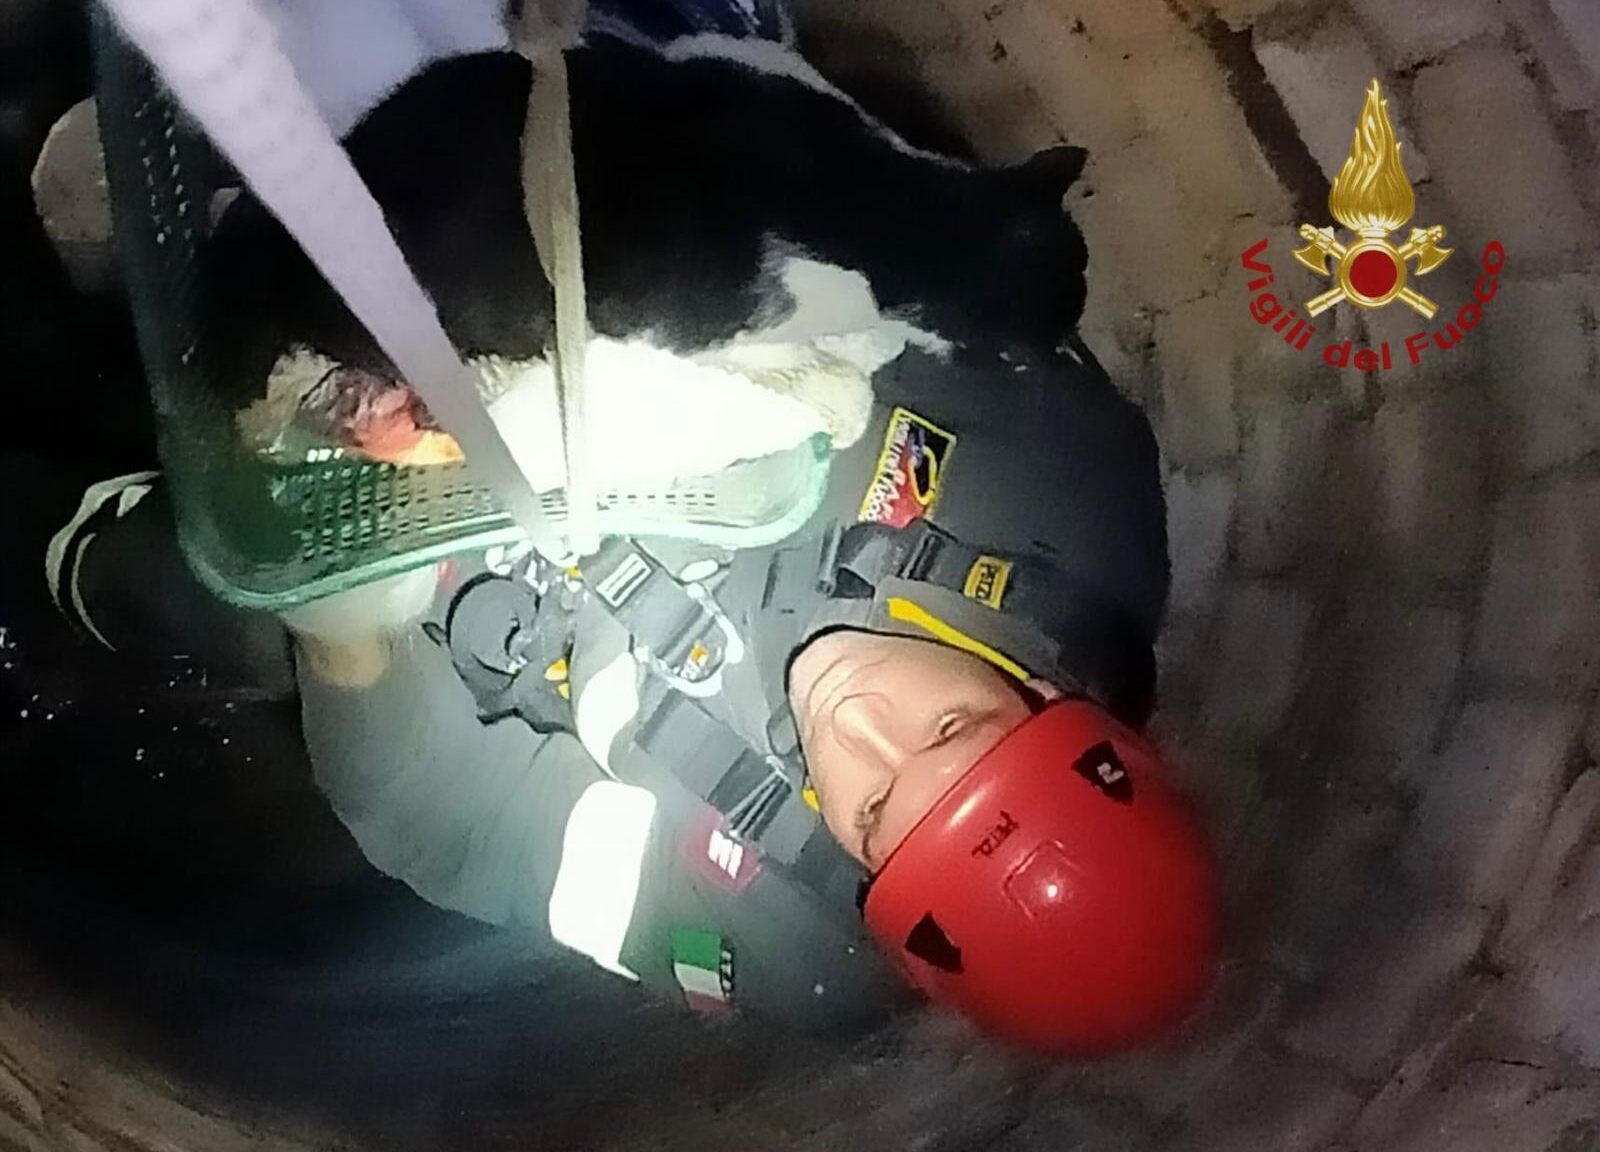 Gatto cade in un pozzo profondo 15metri, salvato dai vigili del fuoco